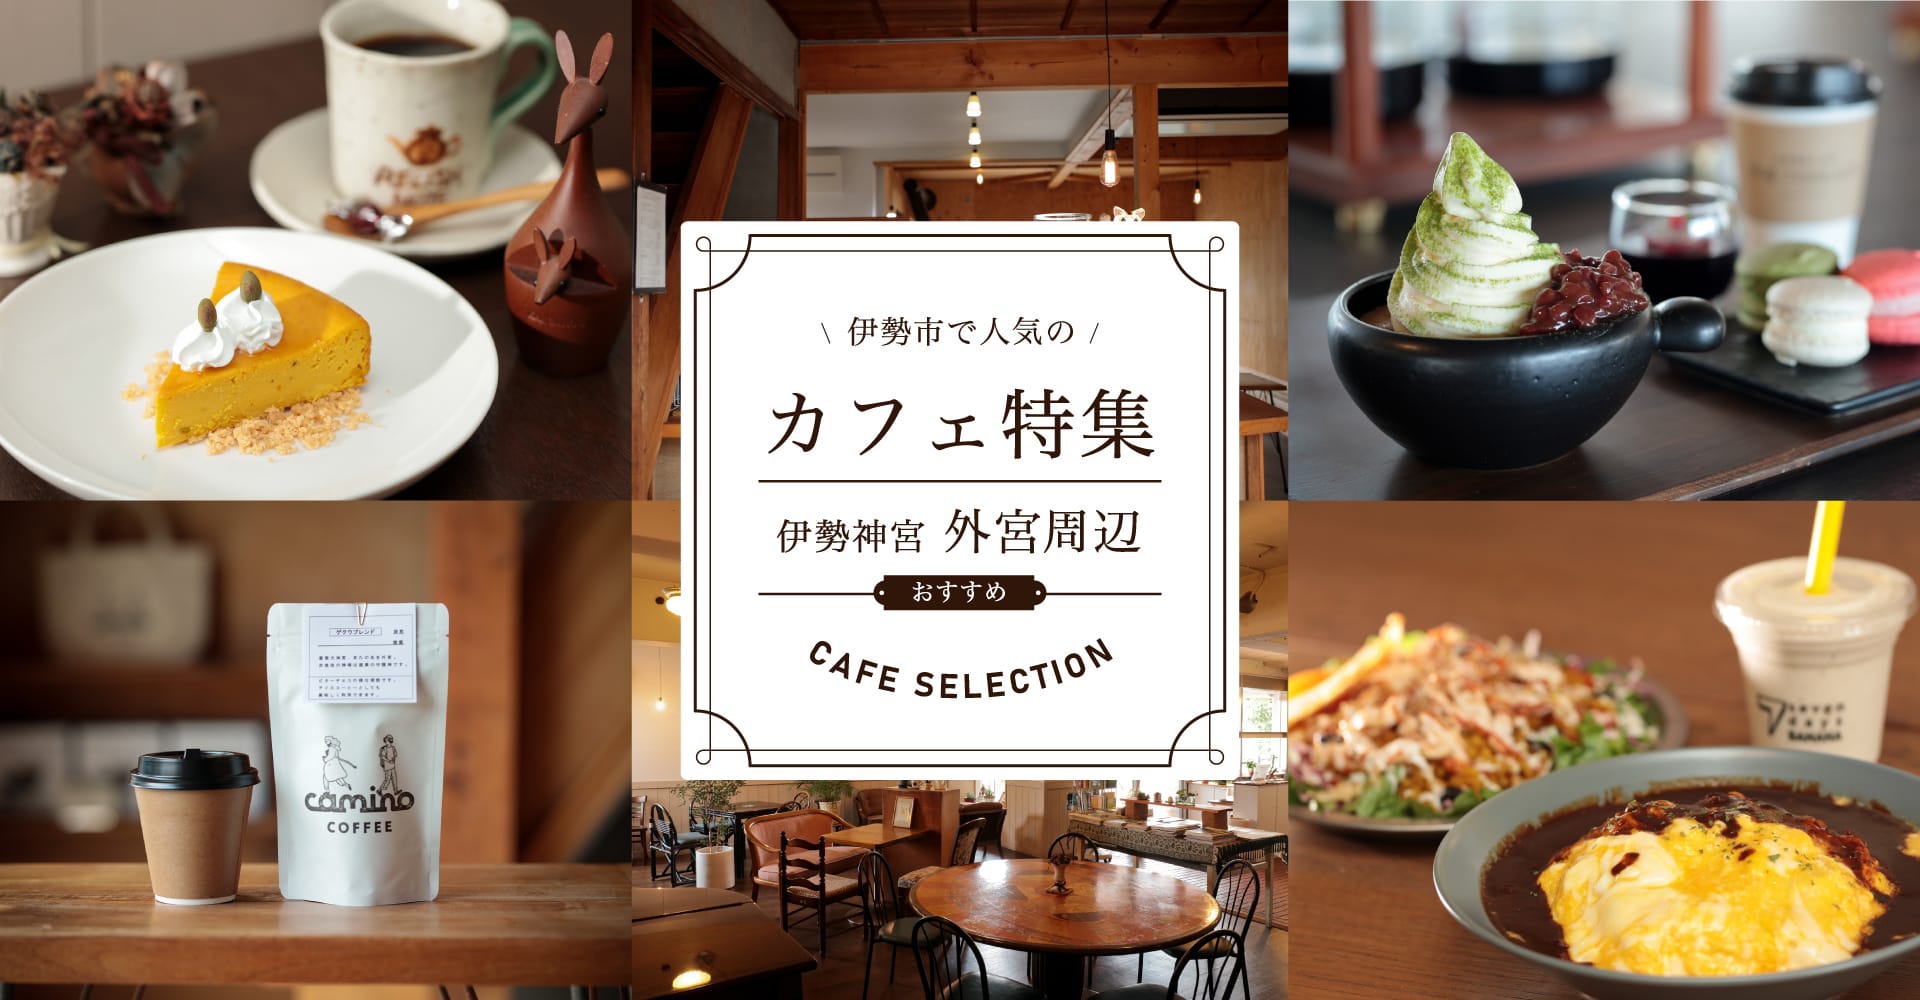 Dossier spécial sur les cafés populaires de la ville d'Ise Autour d'Ise Jingu Geku